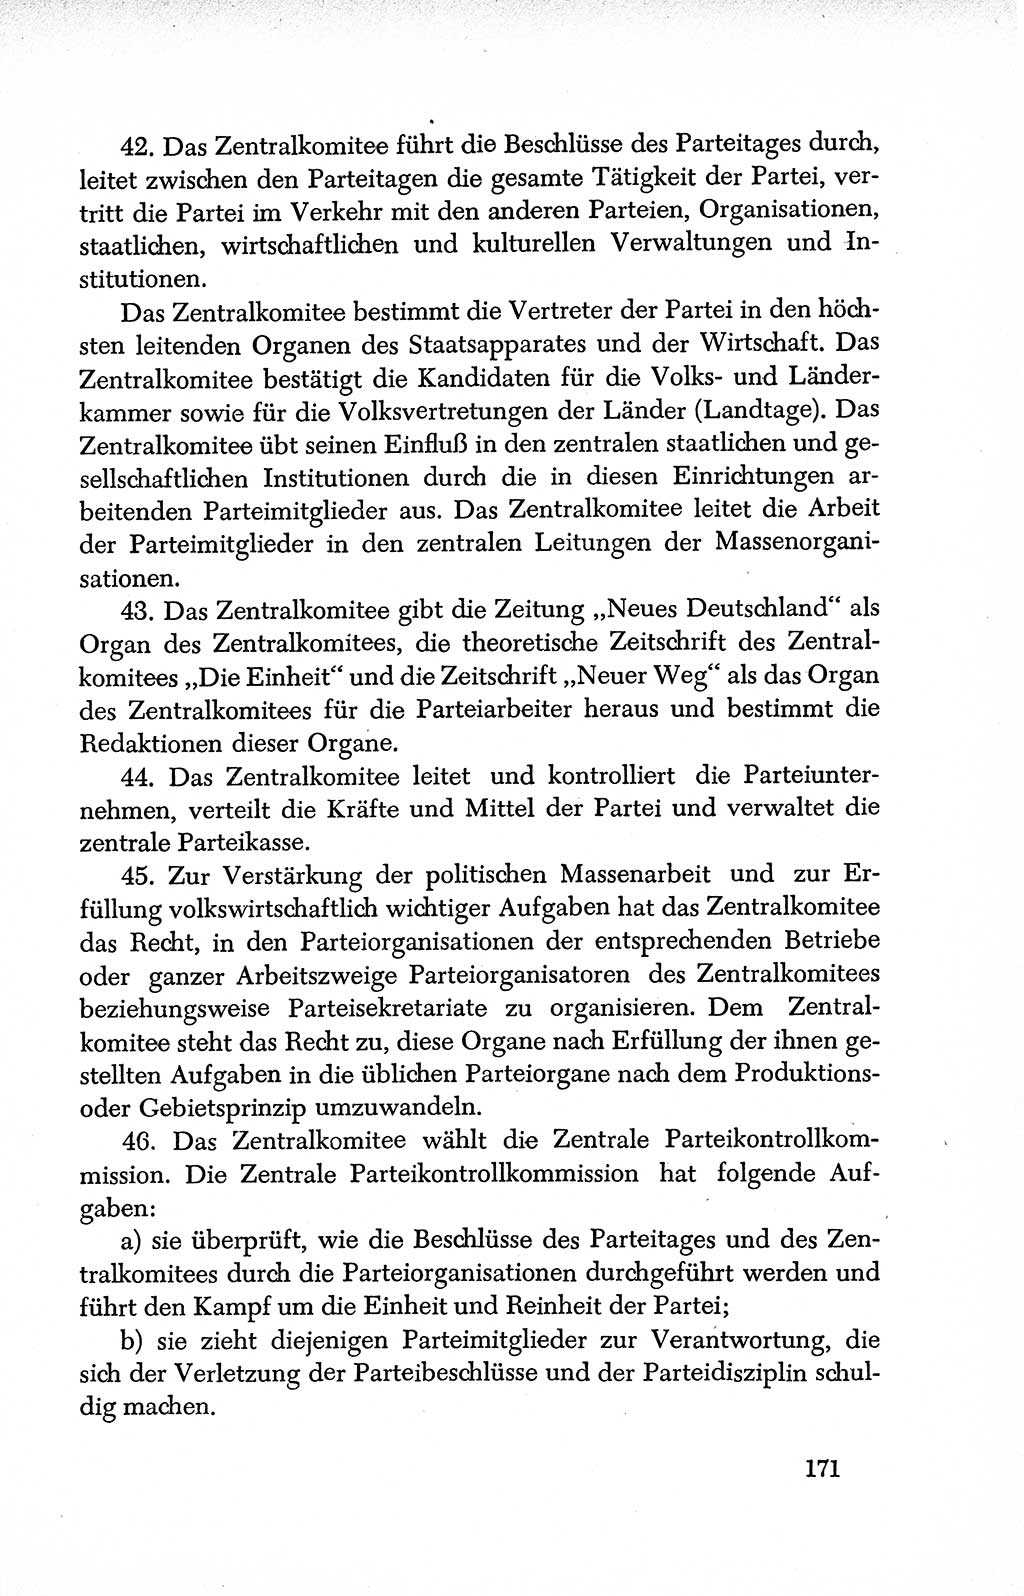 Dokumente der Sozialistischen Einheitspartei Deutschlands (SED) [Deutsche Demokratische Republik (DDR)] 1950-1952, Seite 171 (Dok. SED DDR 1950-1952, S. 171)